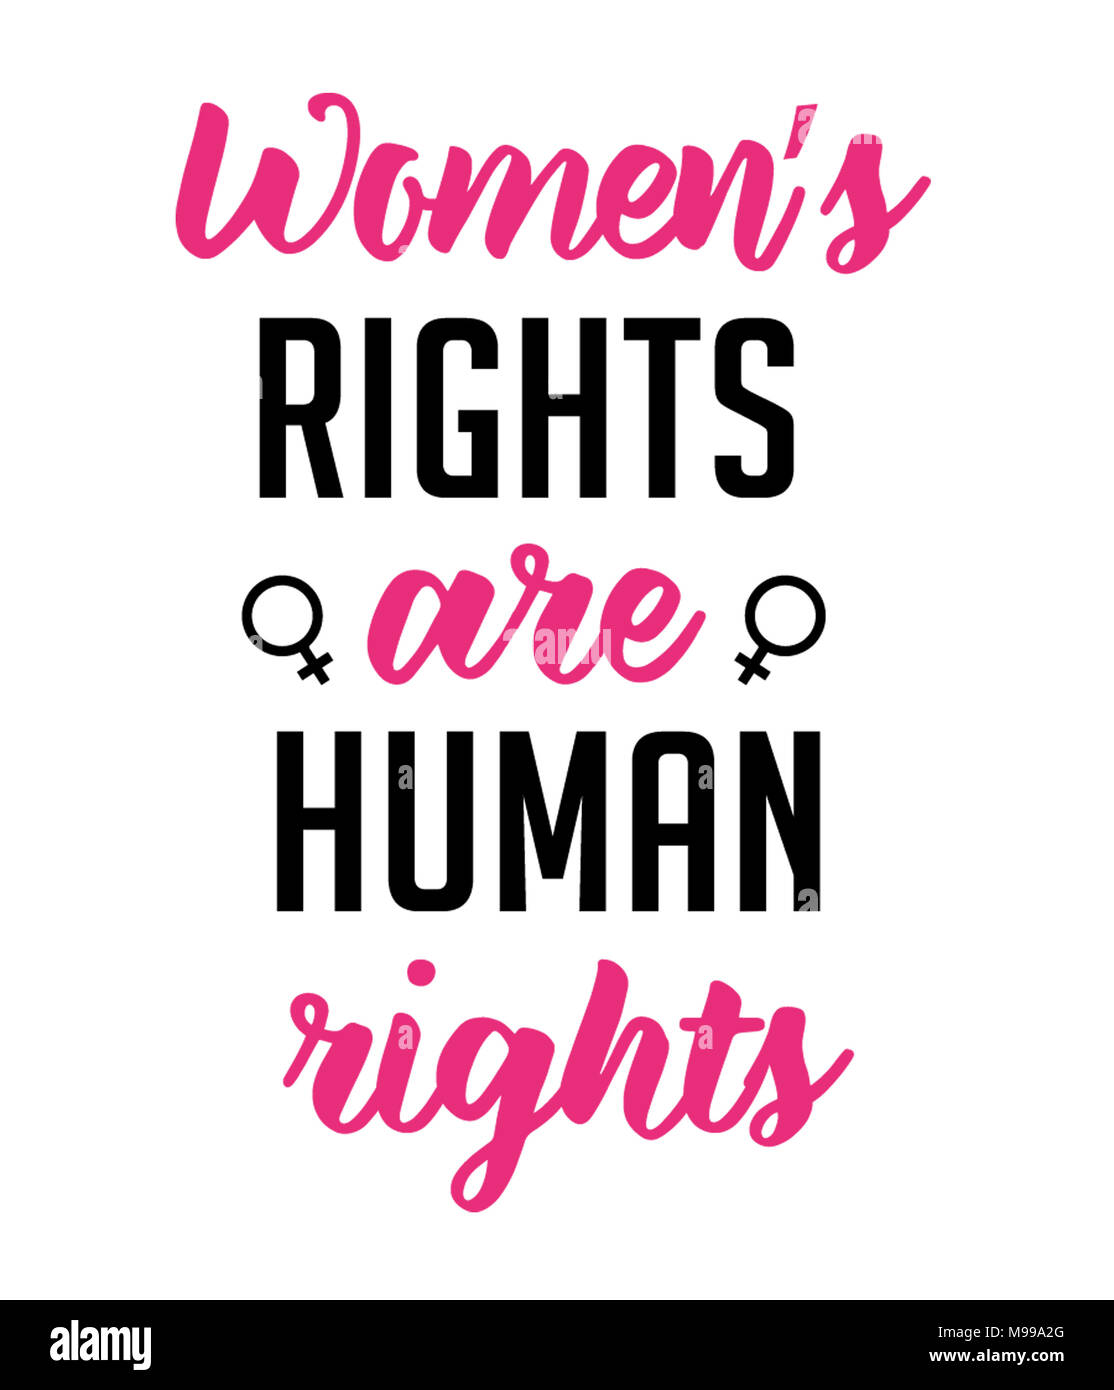 Les droits des femmes sont les droits de l'homme Banque D'Images